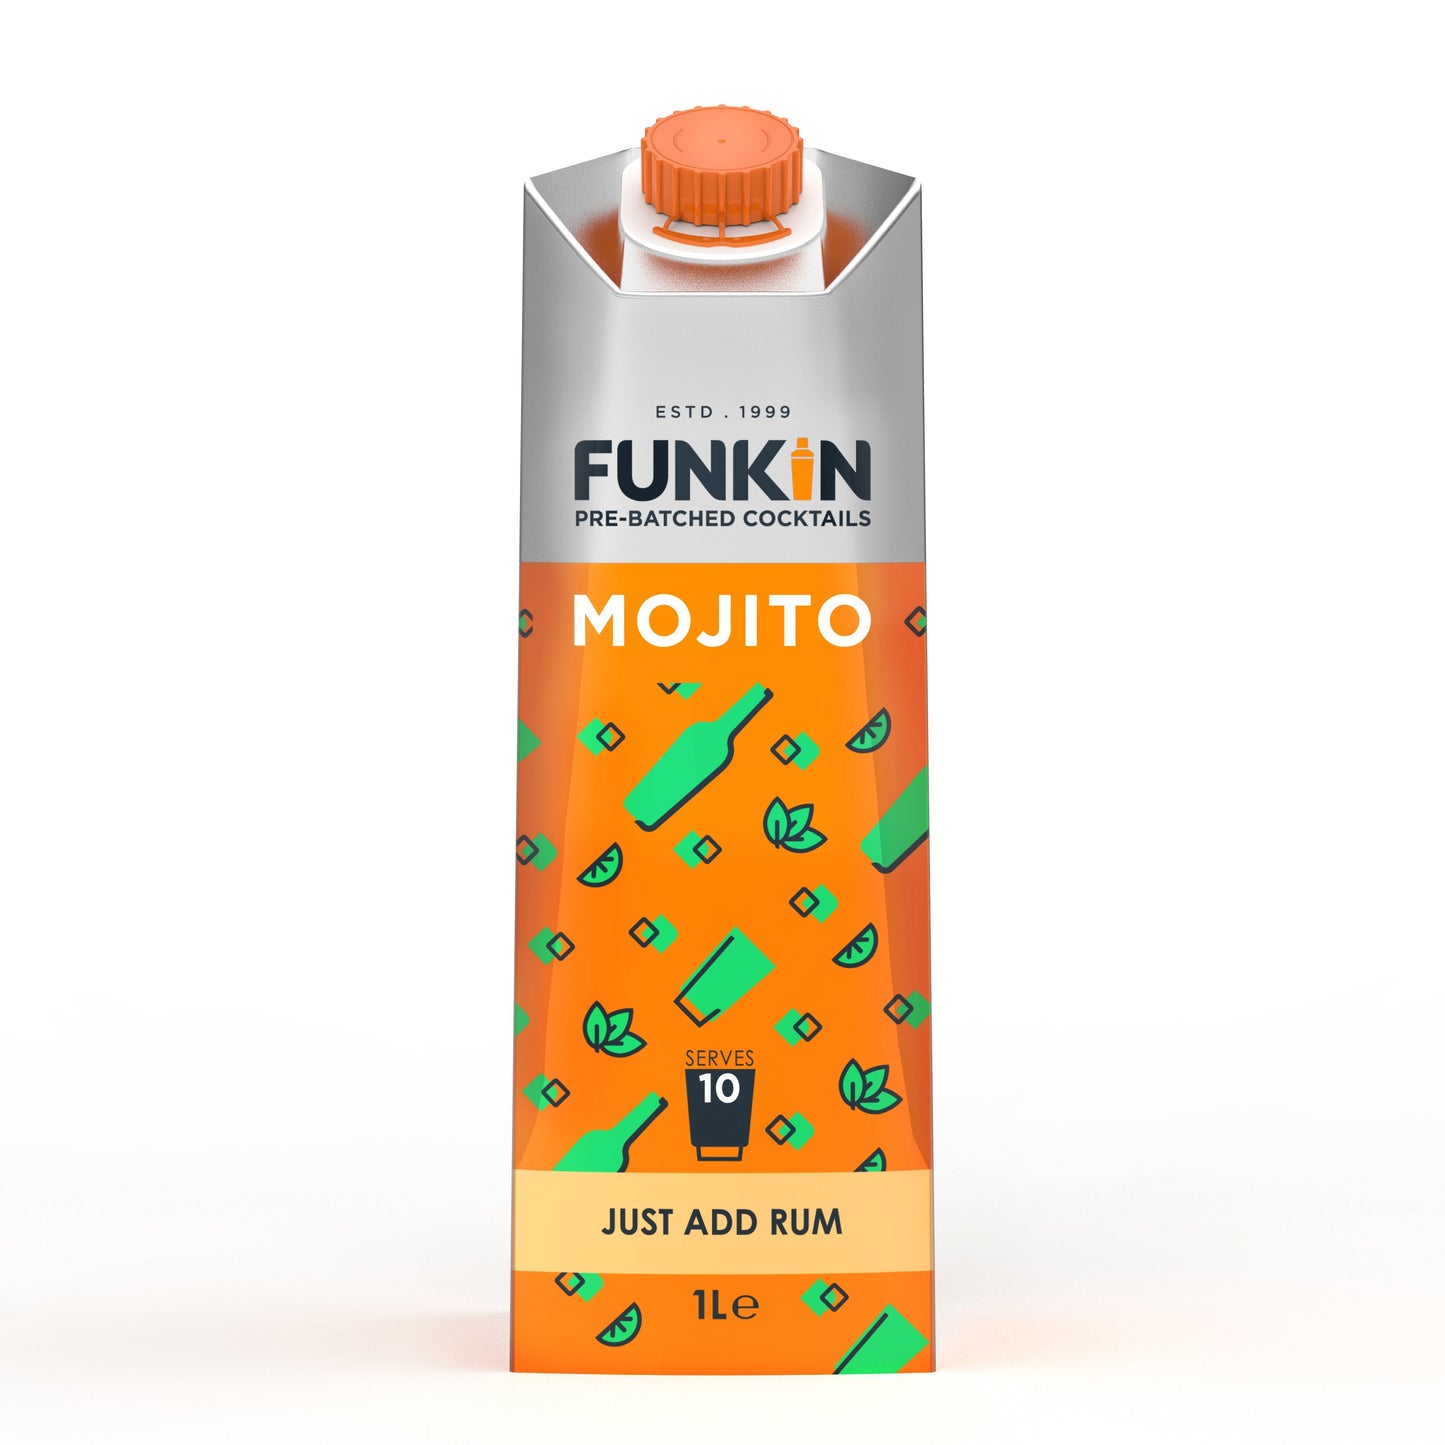 Funkin Mojito cocktail mixer